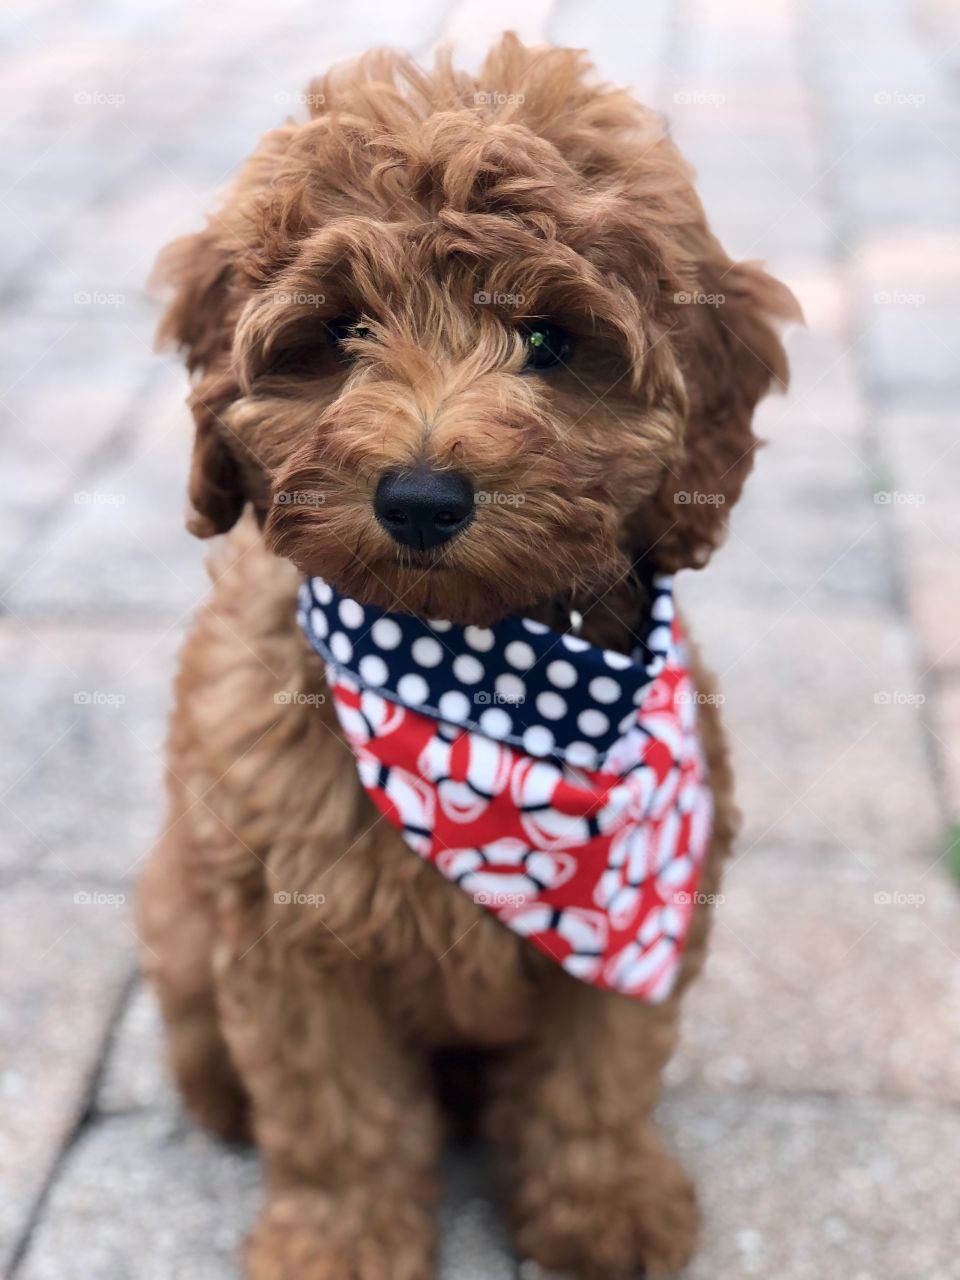 Puppy just chillin feeling patriotic! 